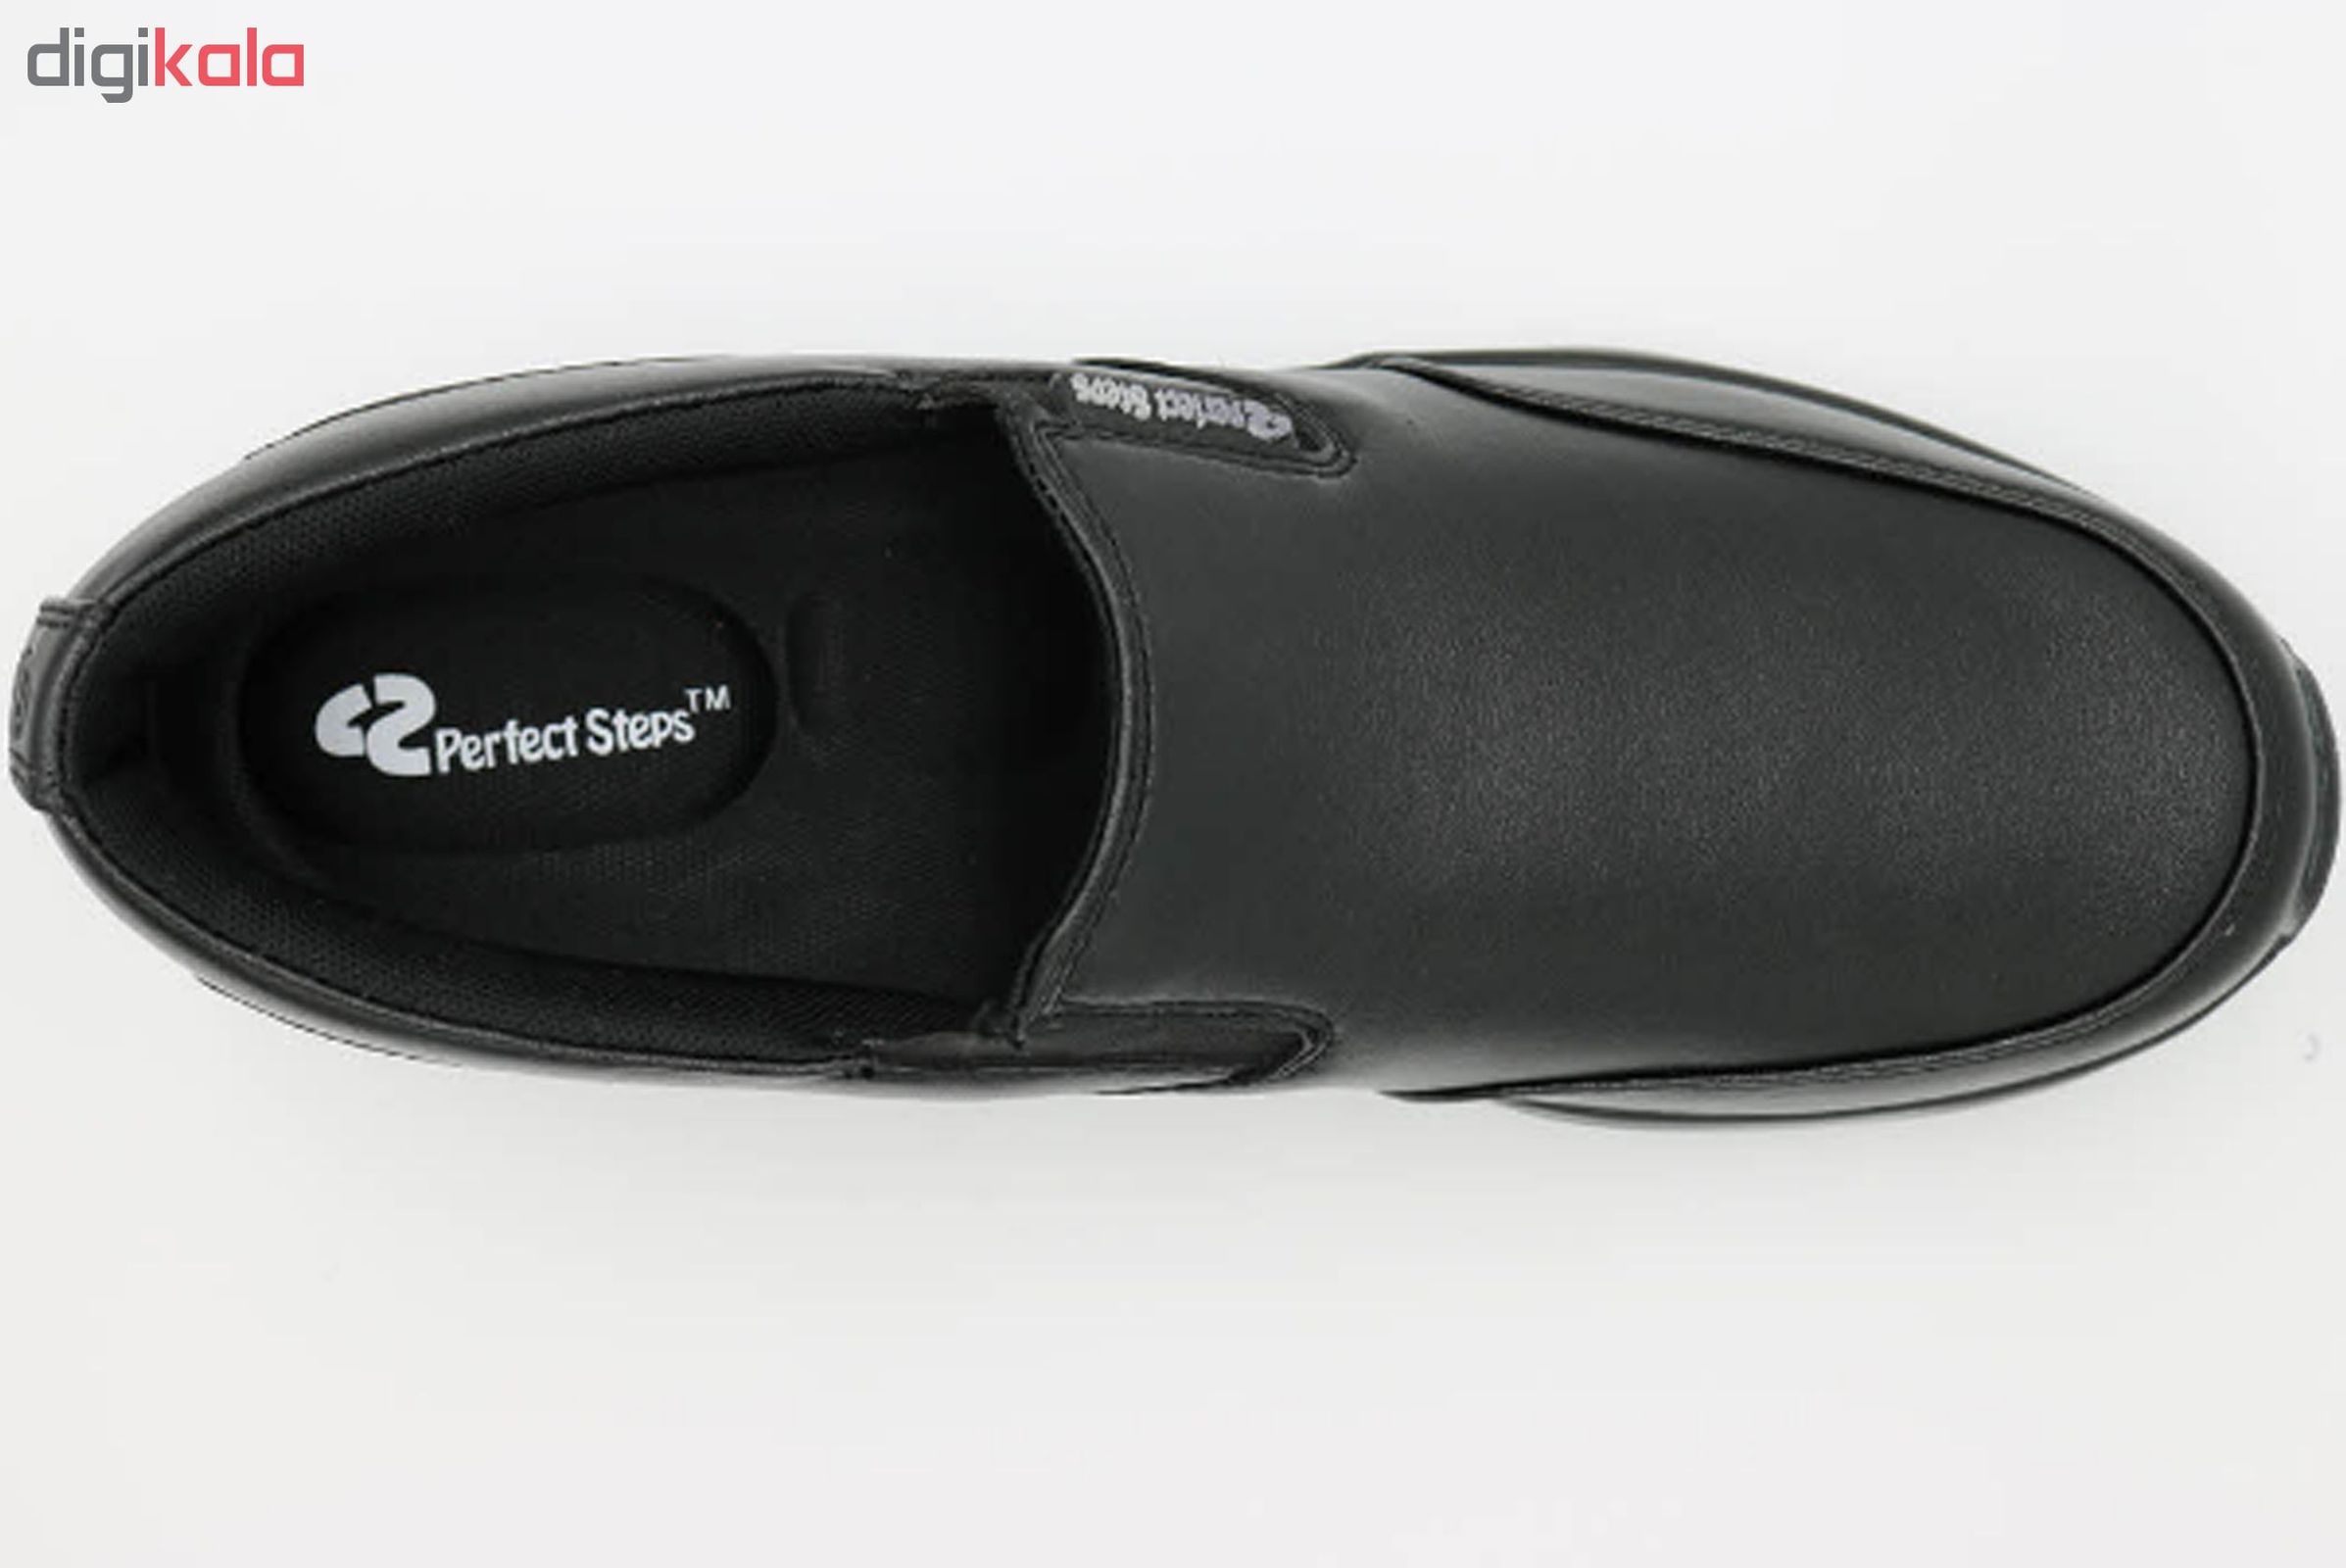 کفش مردانه پرفکت استپس مدل پریمو کد 1983 رنگ مشکی